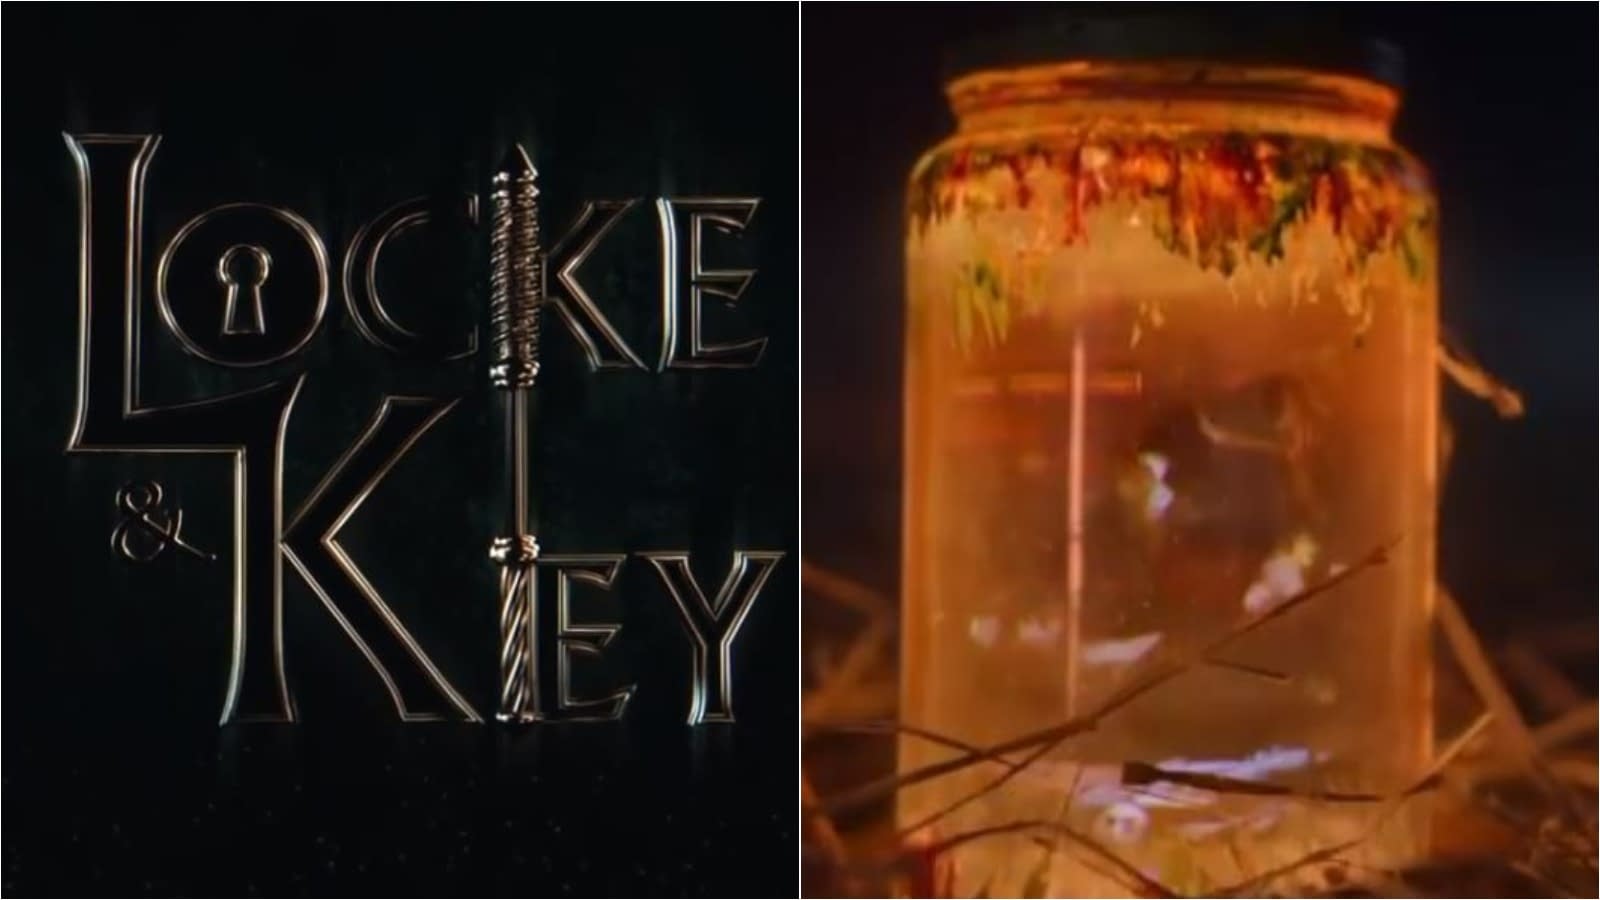 locke & key